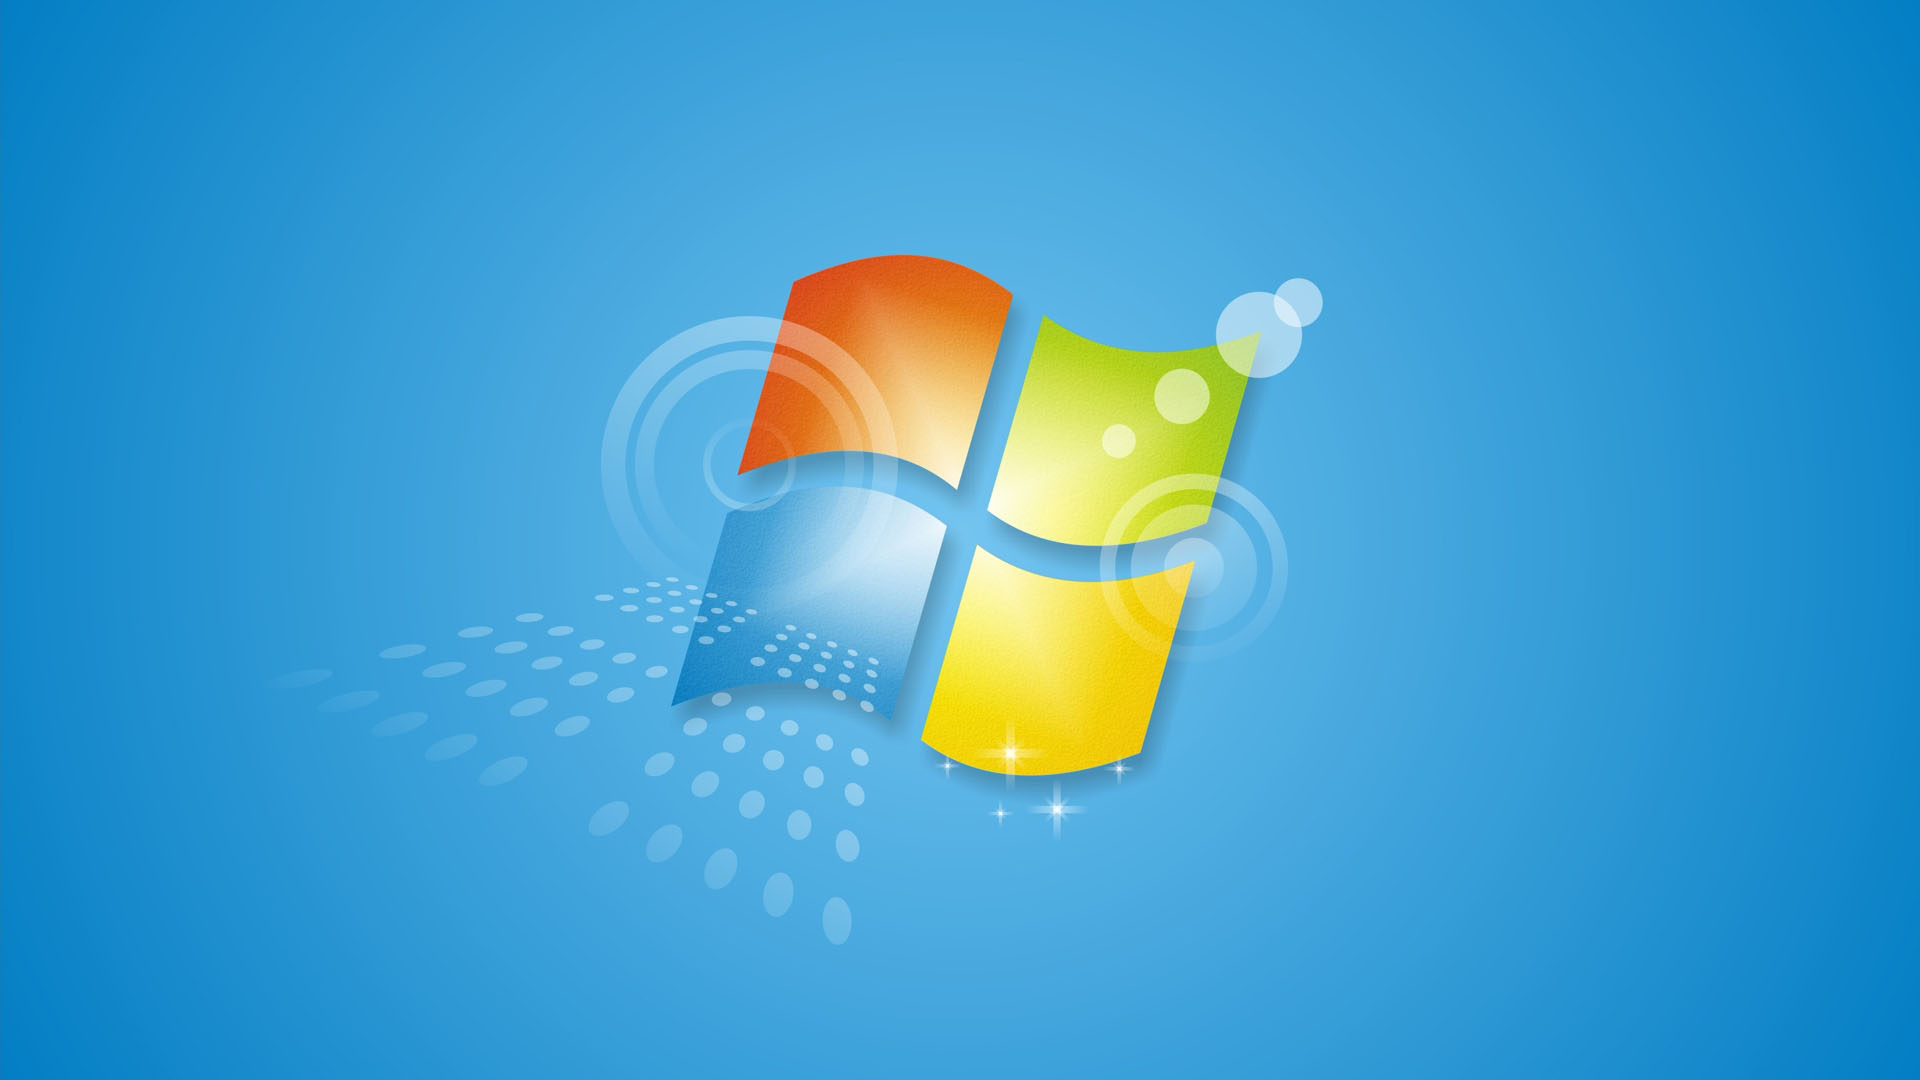 Hình nền máy tính Windows 7 miễn phí đang chờ đón bạn! Tải ngay những hình nền độc đáo và đẹp mắt miễn phí cho desktop của bạn. Windows 7 là một trong những phiên bản phổ biến nhất của Microsoft, bao gồm nhiều hình nền đa dạng để bạn chọn lựa. Nhấn vào hình ảnh để tải xuống hình nền miễn phí và làm mới desktop của bạn ngay hôm nay! 